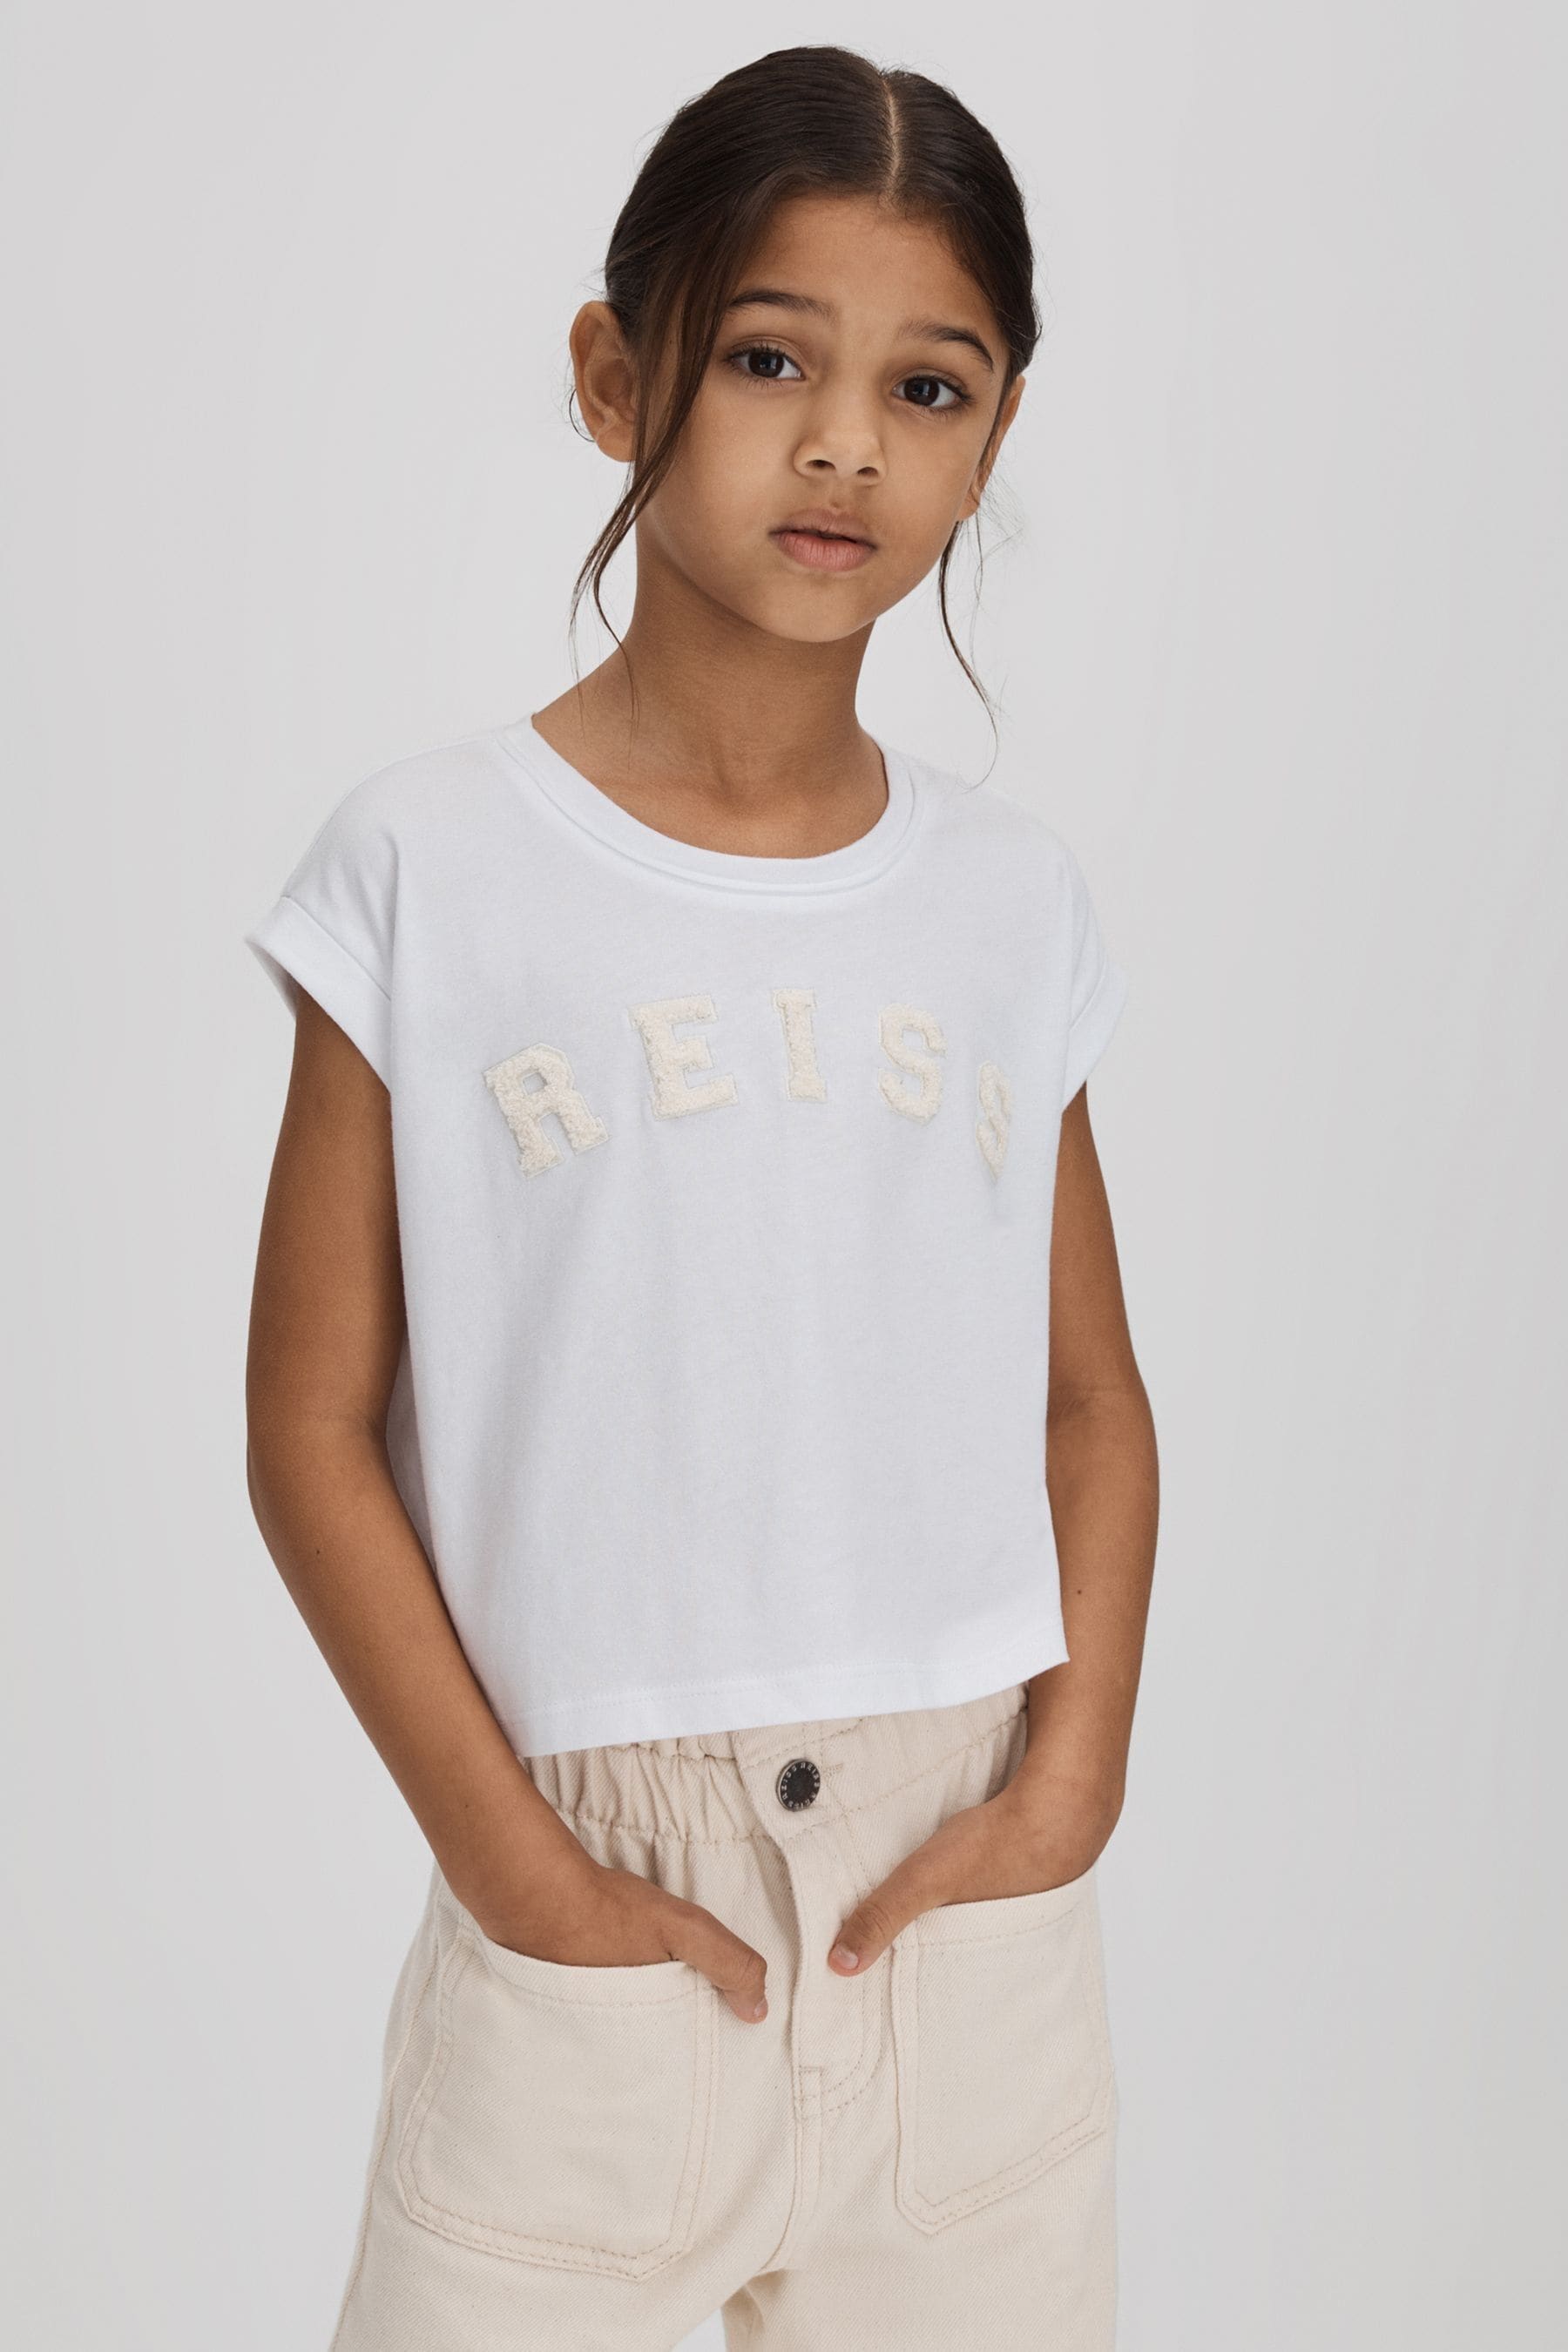 Reiss Kids' Taya - White Senior Textured Motif Cotton Crew Neck T-shirt, Uk 9-10 Yrs